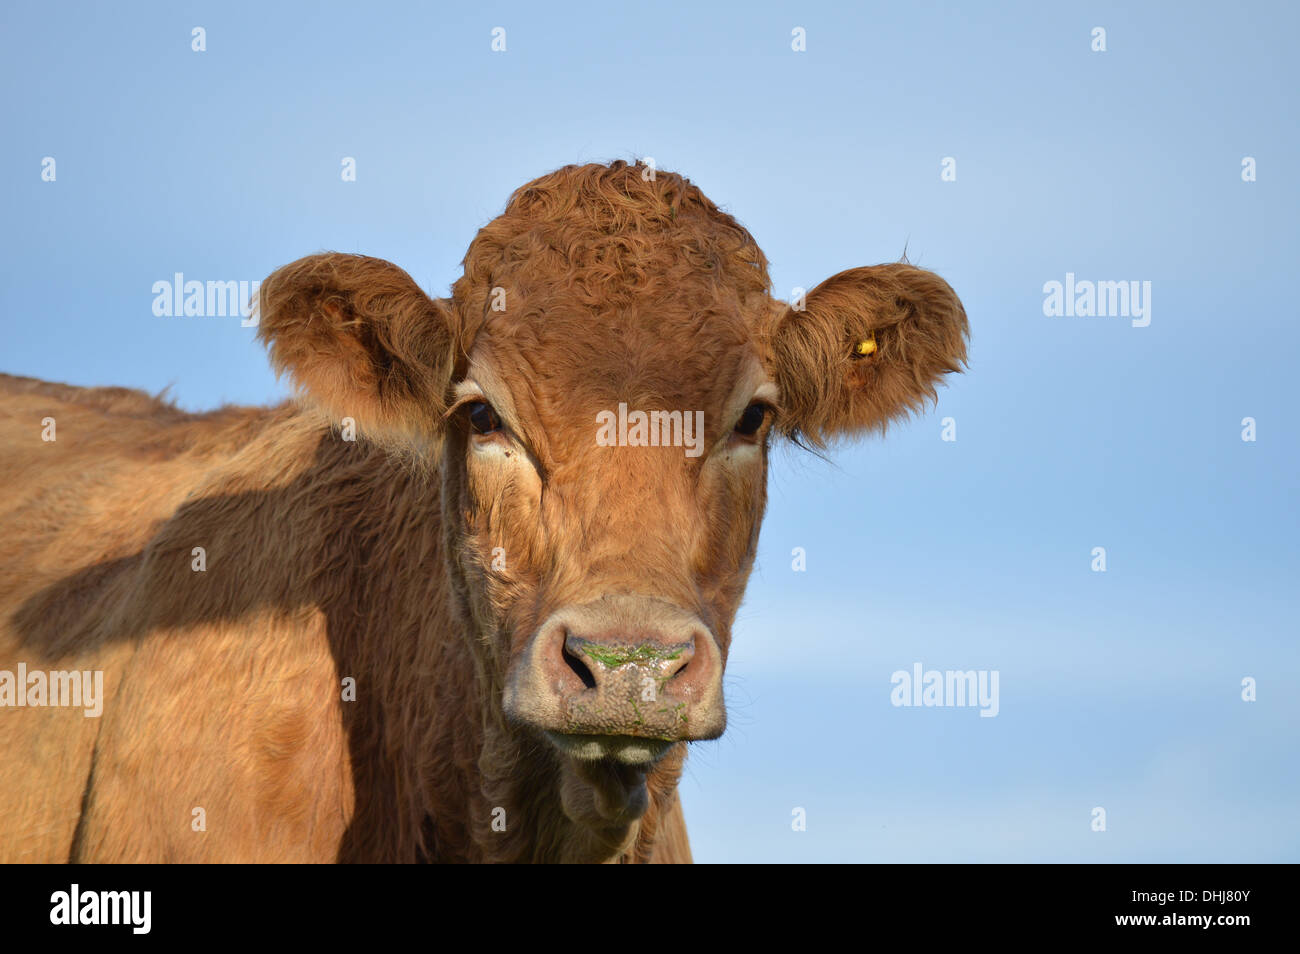 Vaca mirando sospechosamente en la cámara Foto de stock